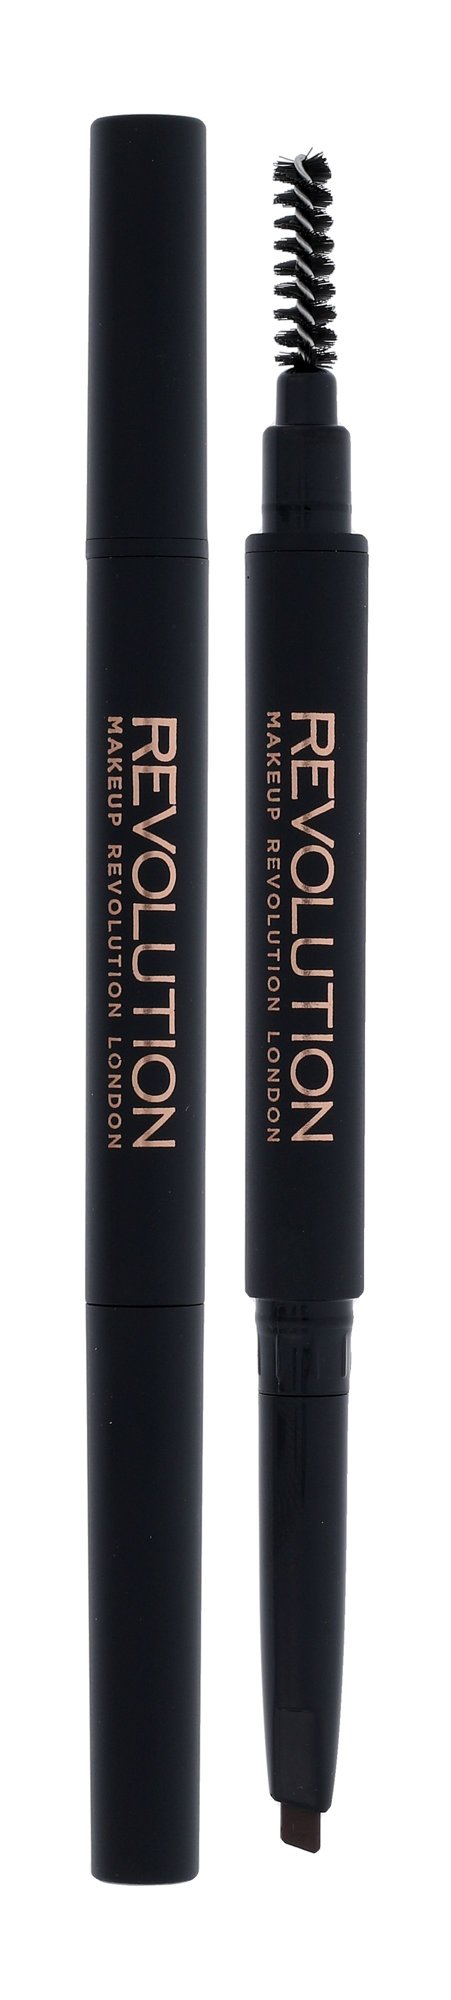 Makeup Revolution London Duo Brow Definer antakių pieštukas